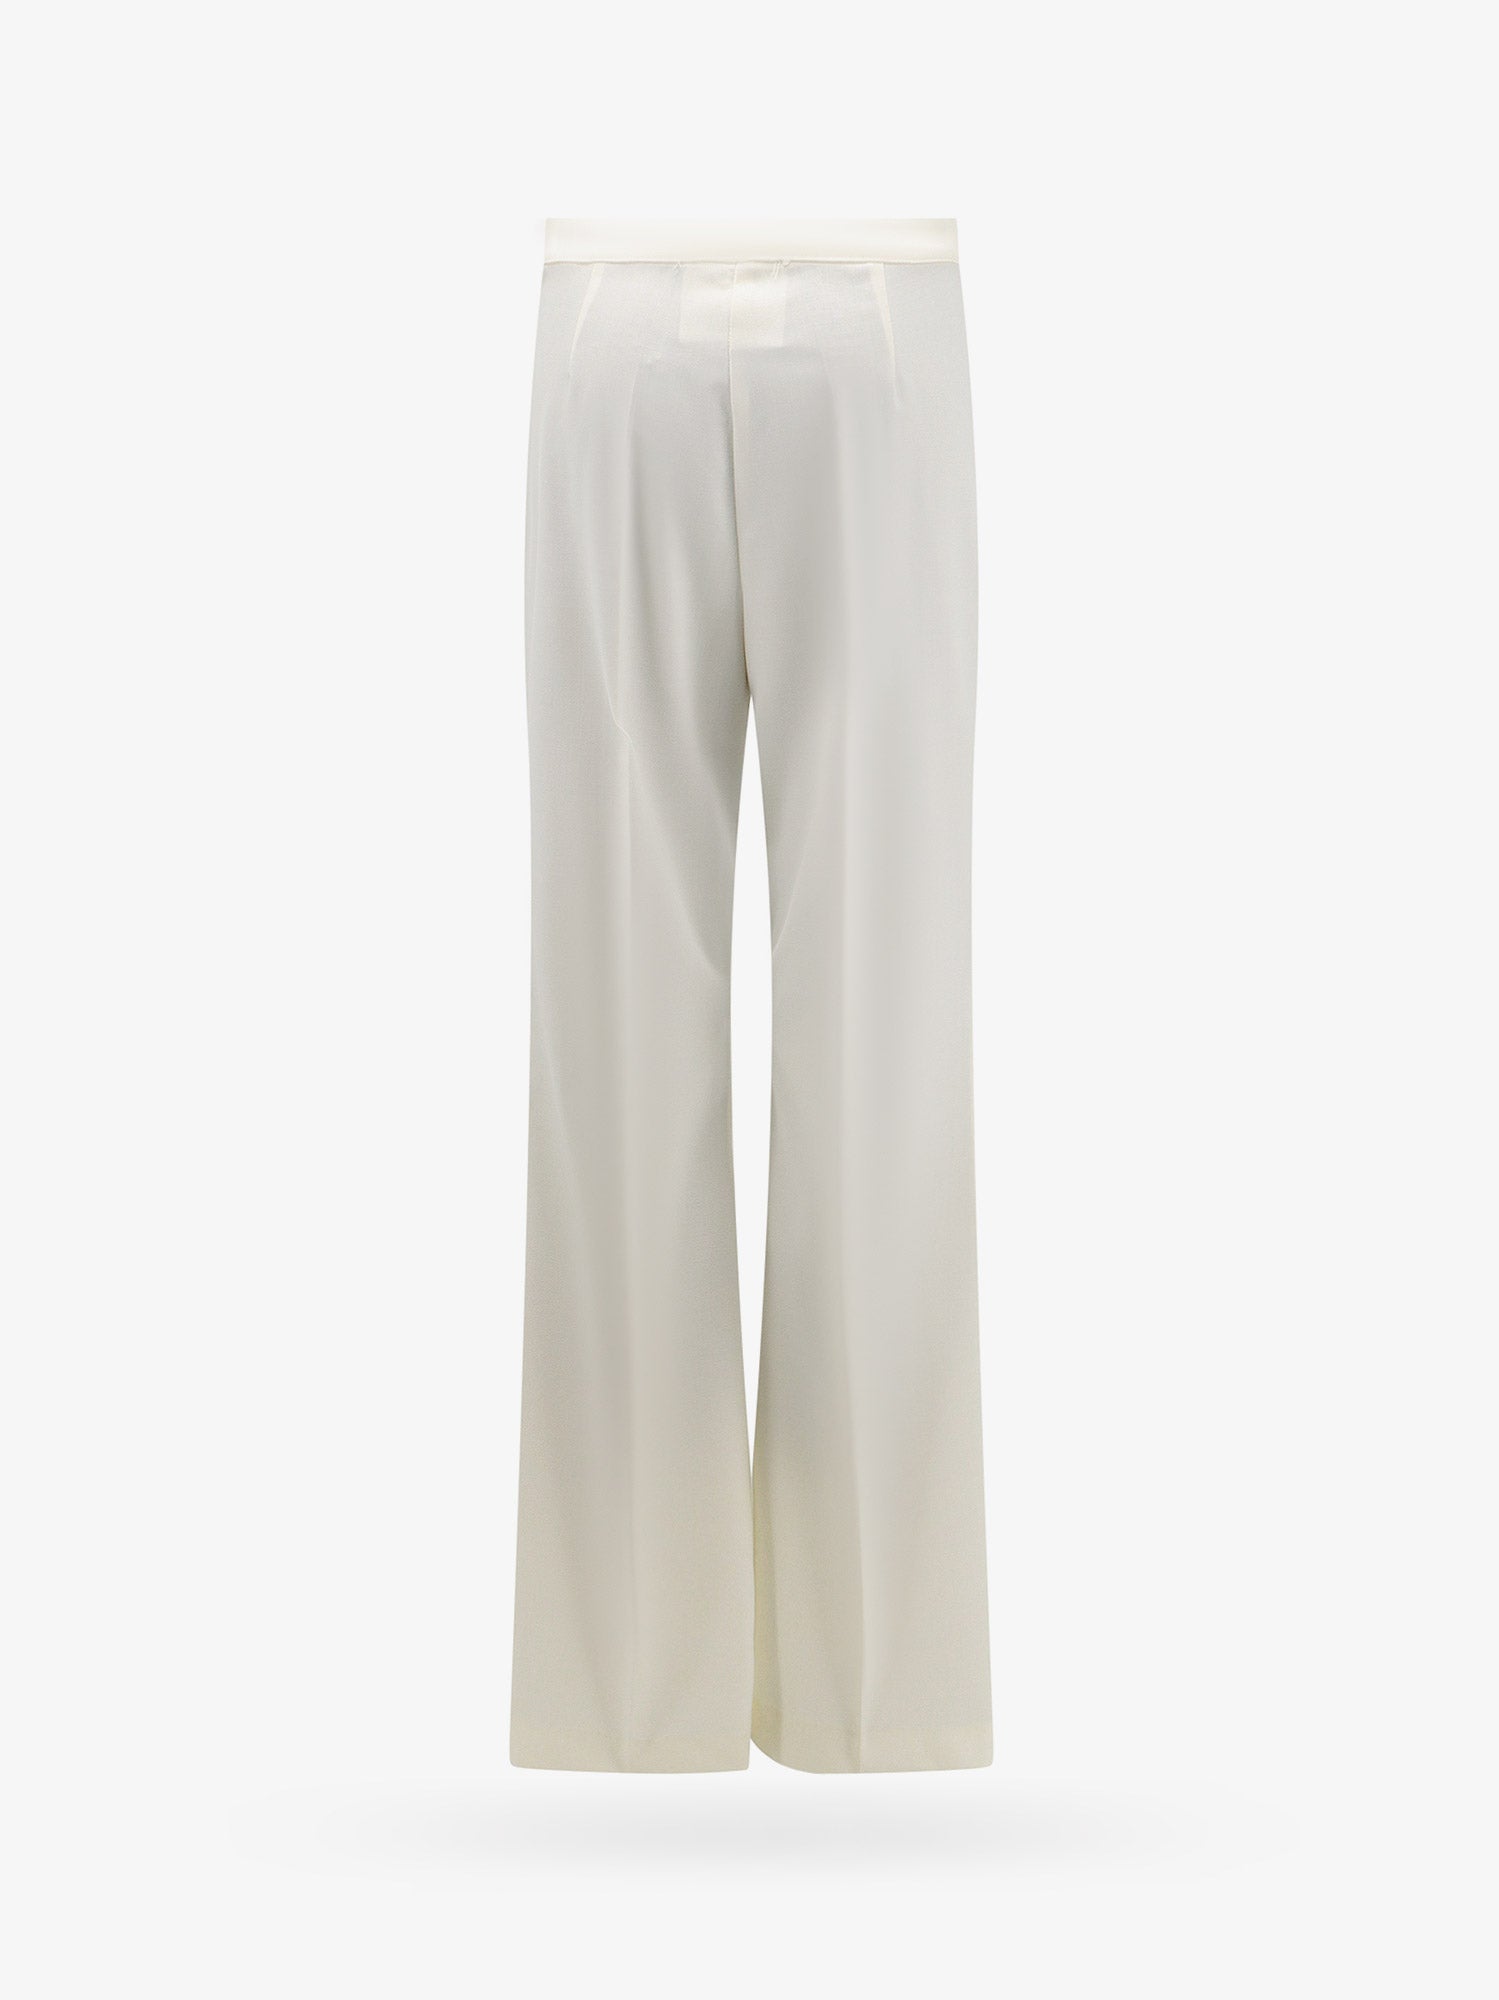 Erika Cavallini Woman Trouser Woman White Pants - Walmart.com